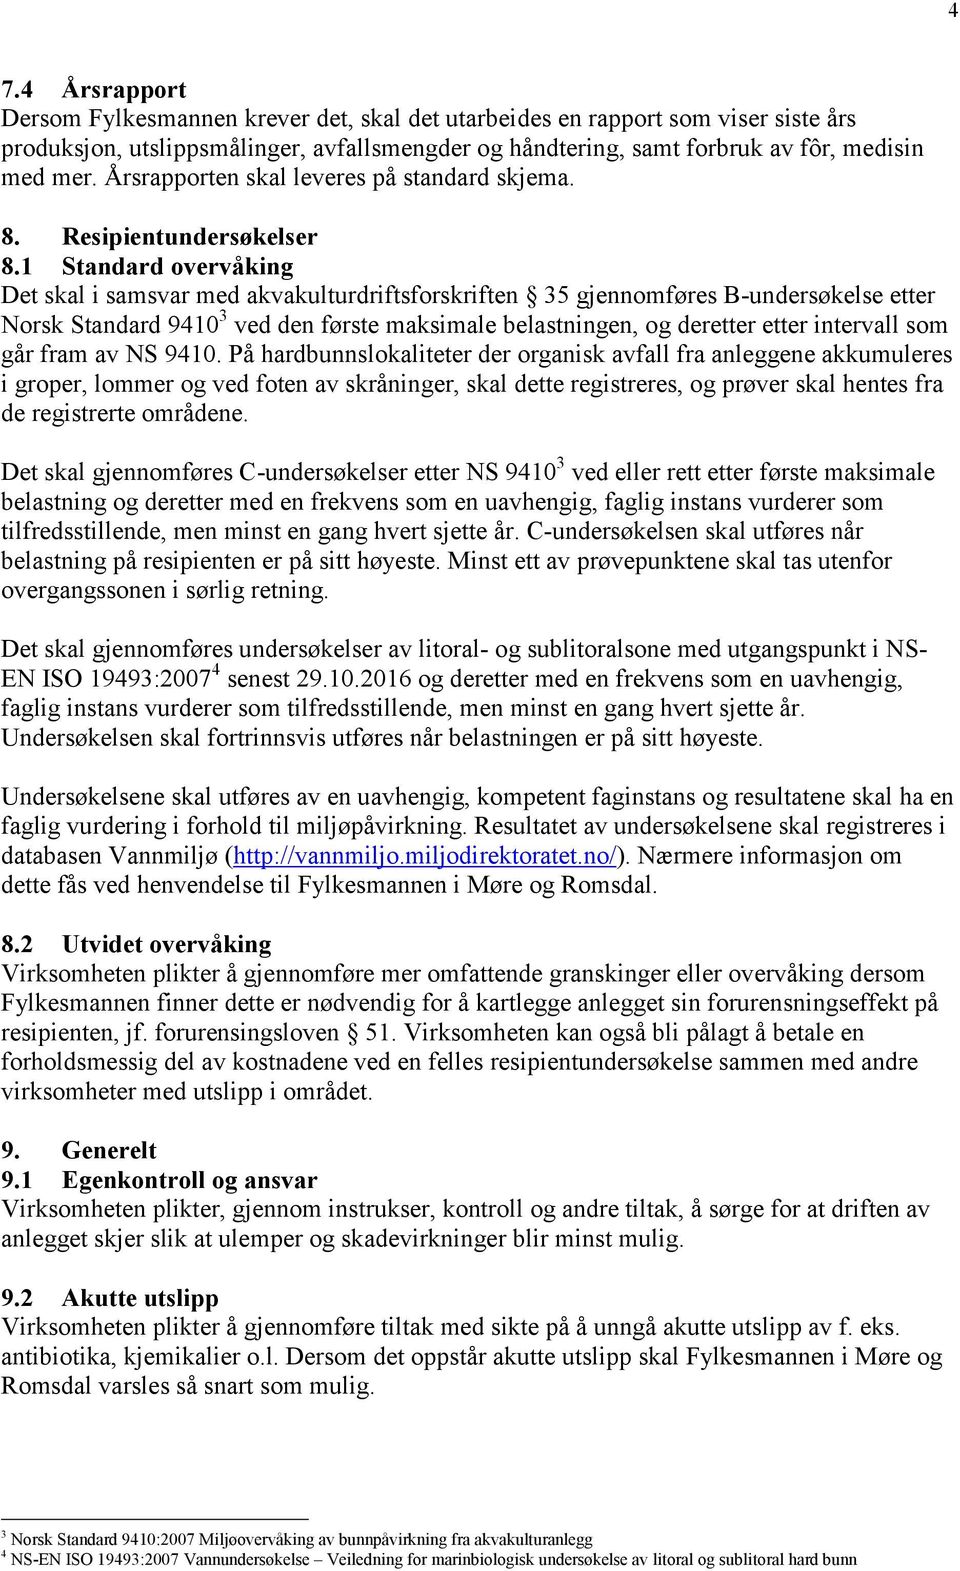 1 Standard overvåking Det skal i samsvar med akvakulturdriftsforskriften 35 gjennomføres B-undersøkelse etter Norsk Standard 9410 3 ved den første maksimale belastningen, og deretter etter intervall